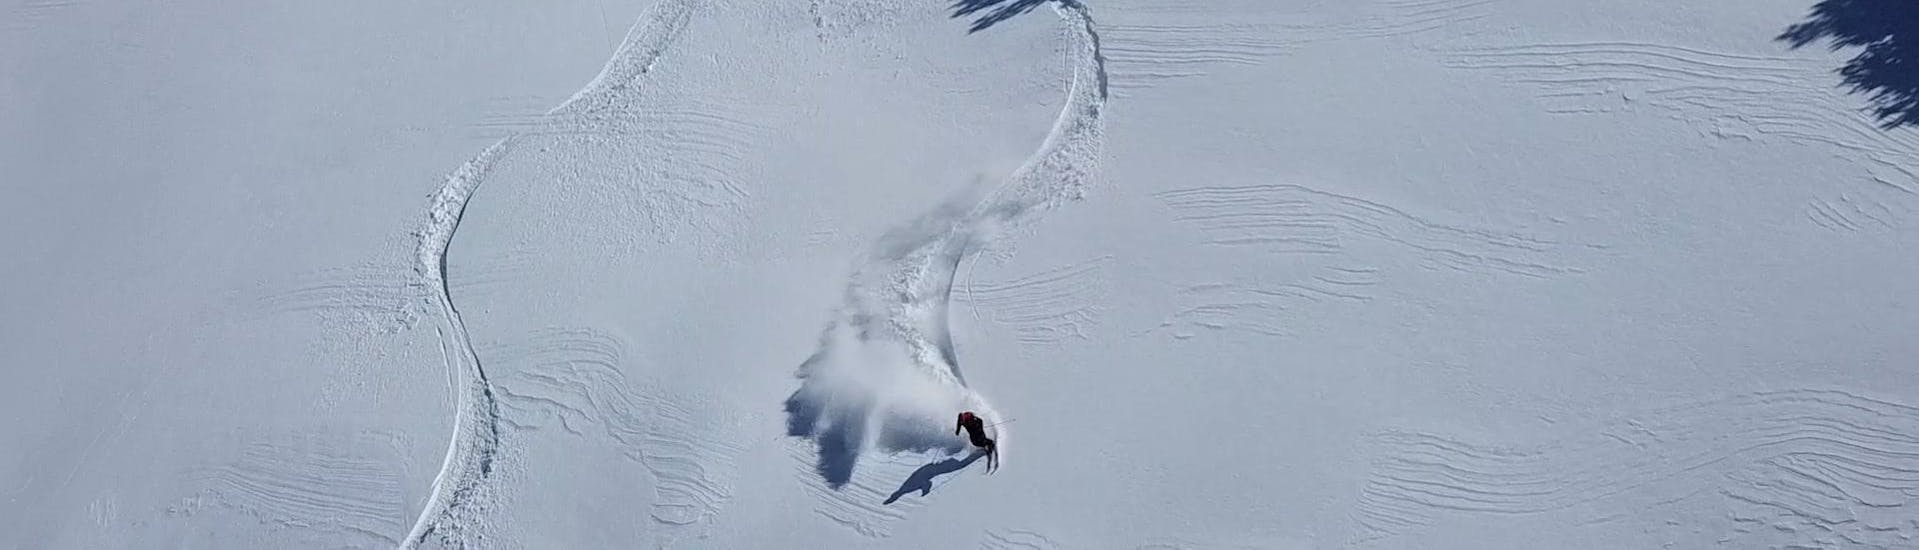 Un skieur profite de la descente dans la neige profonde pendant les cours particuliers de ski freeride pour tous les niveaux de l'école de ski Cerler.